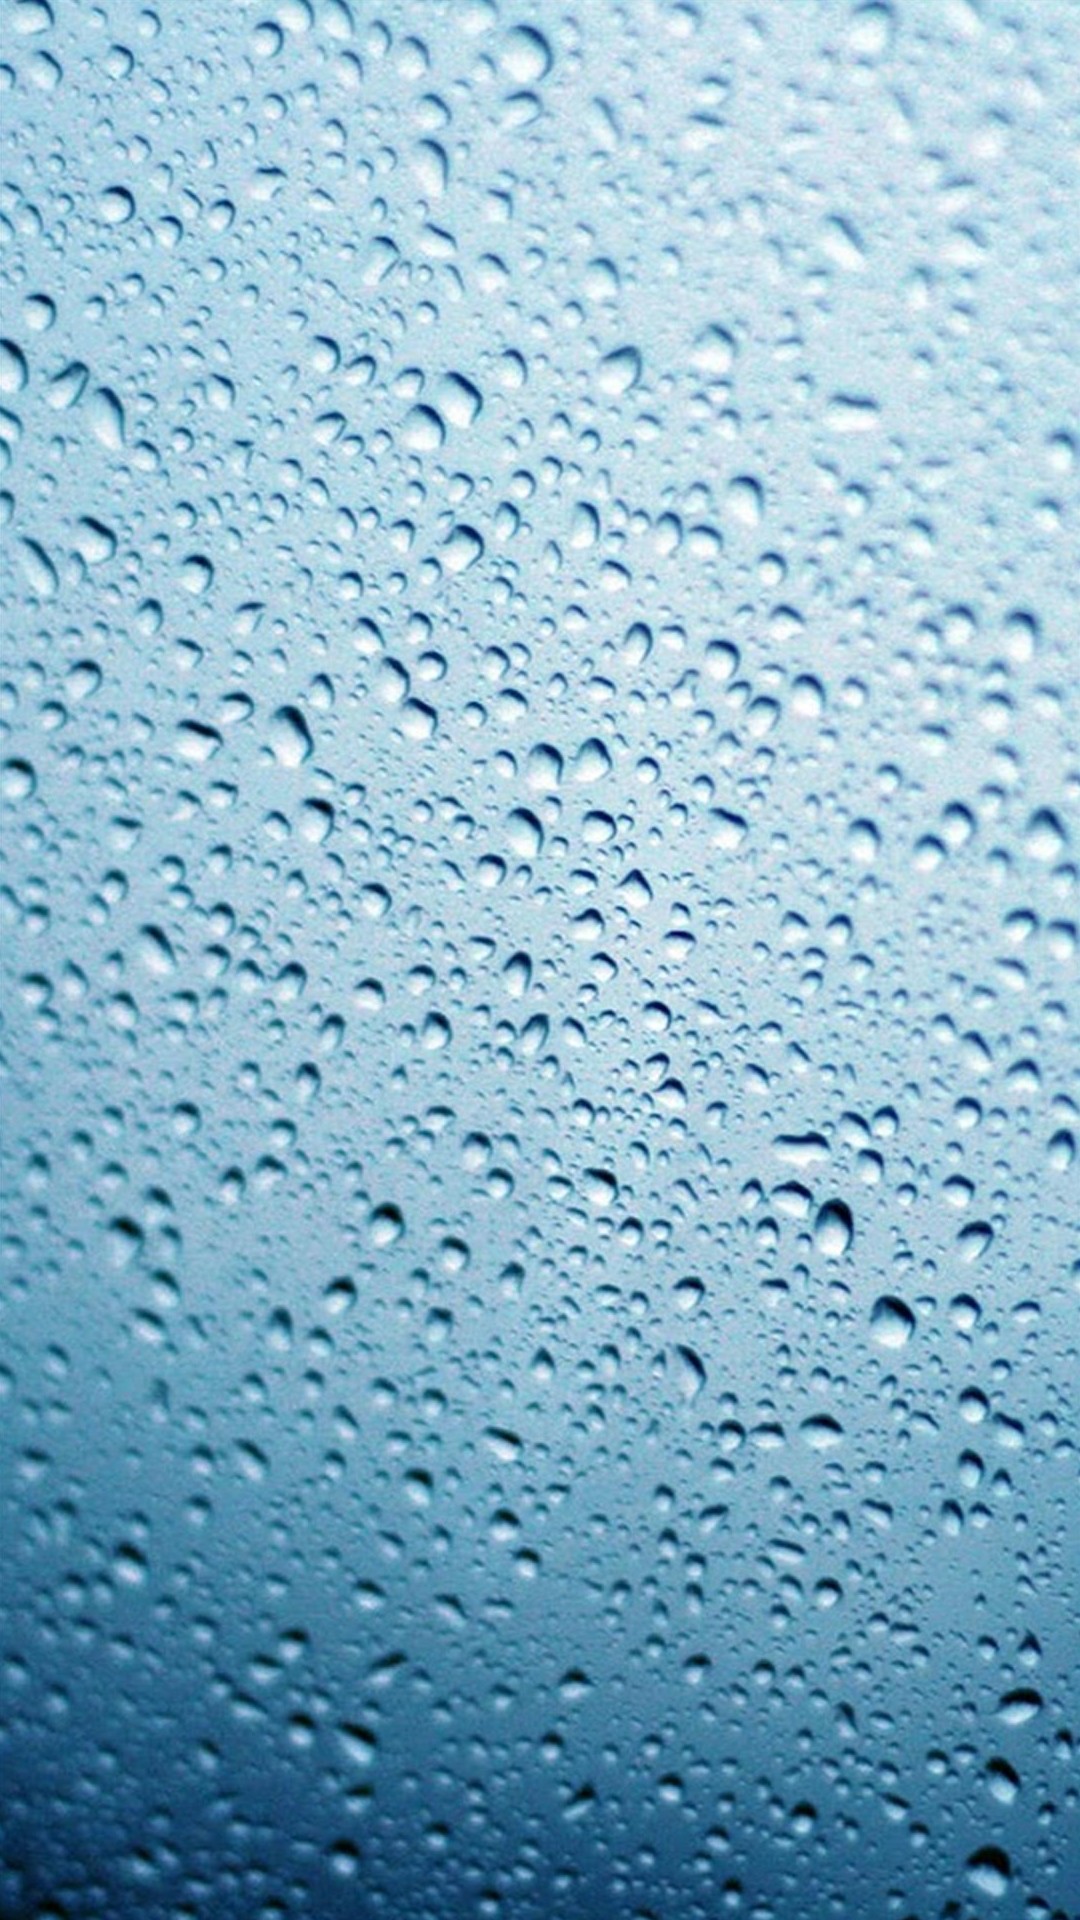 47+] HD Water Drops Wallpaper - WallpaperSafari